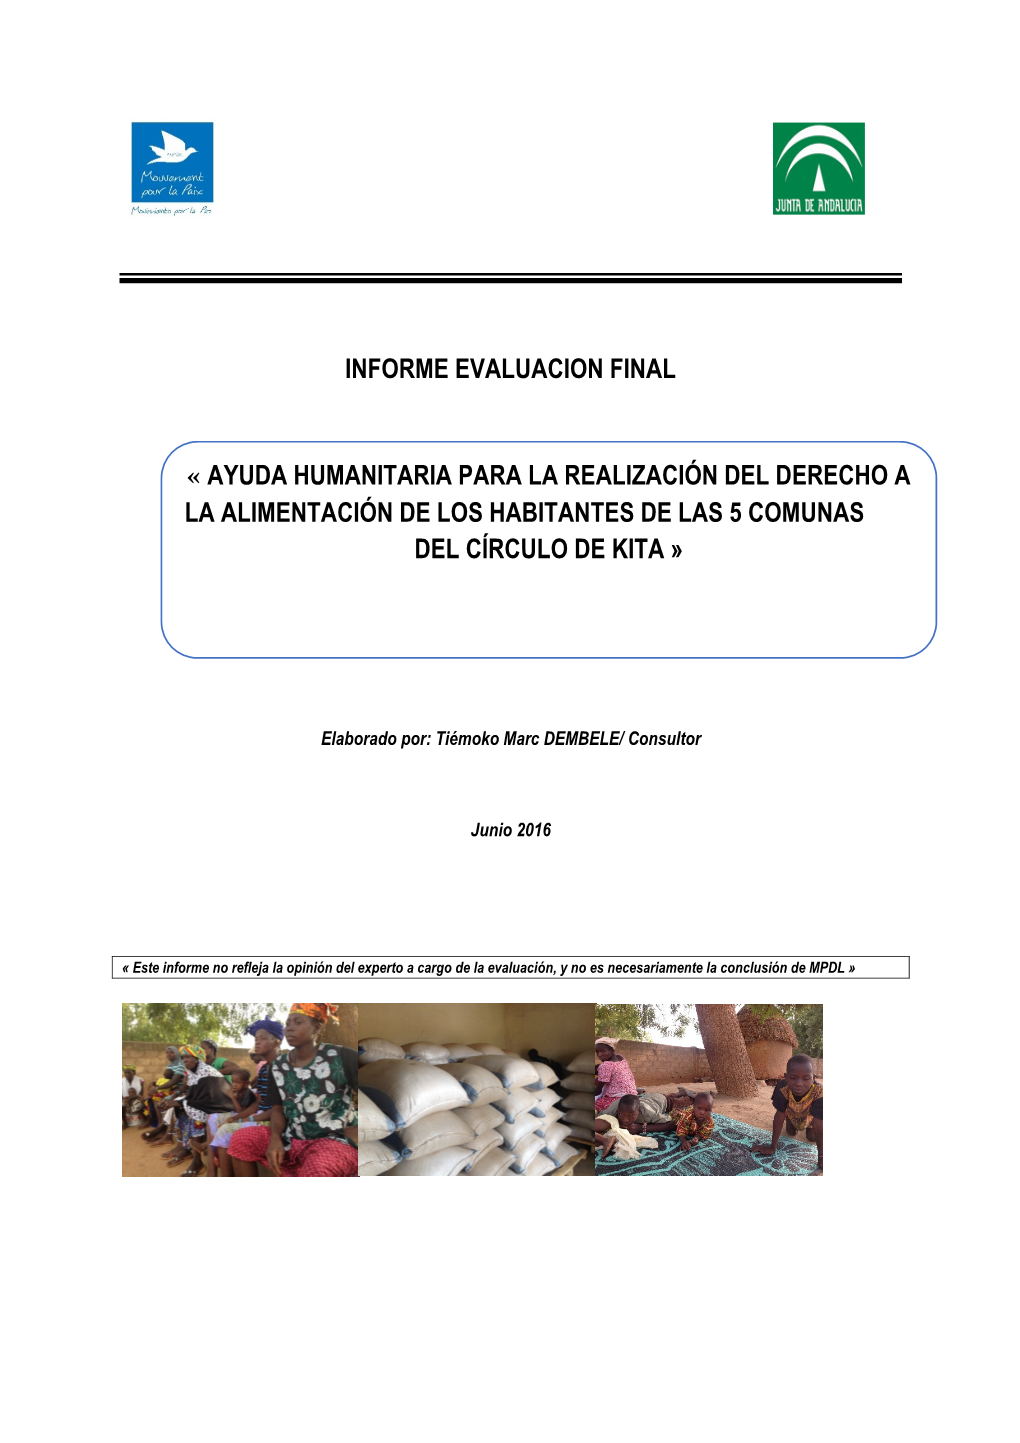 Informe Evaluacion Final « Ayuda Humanitaria Para La Realización Del Derecho a La Alimentación De Los Habitantes De Las 5